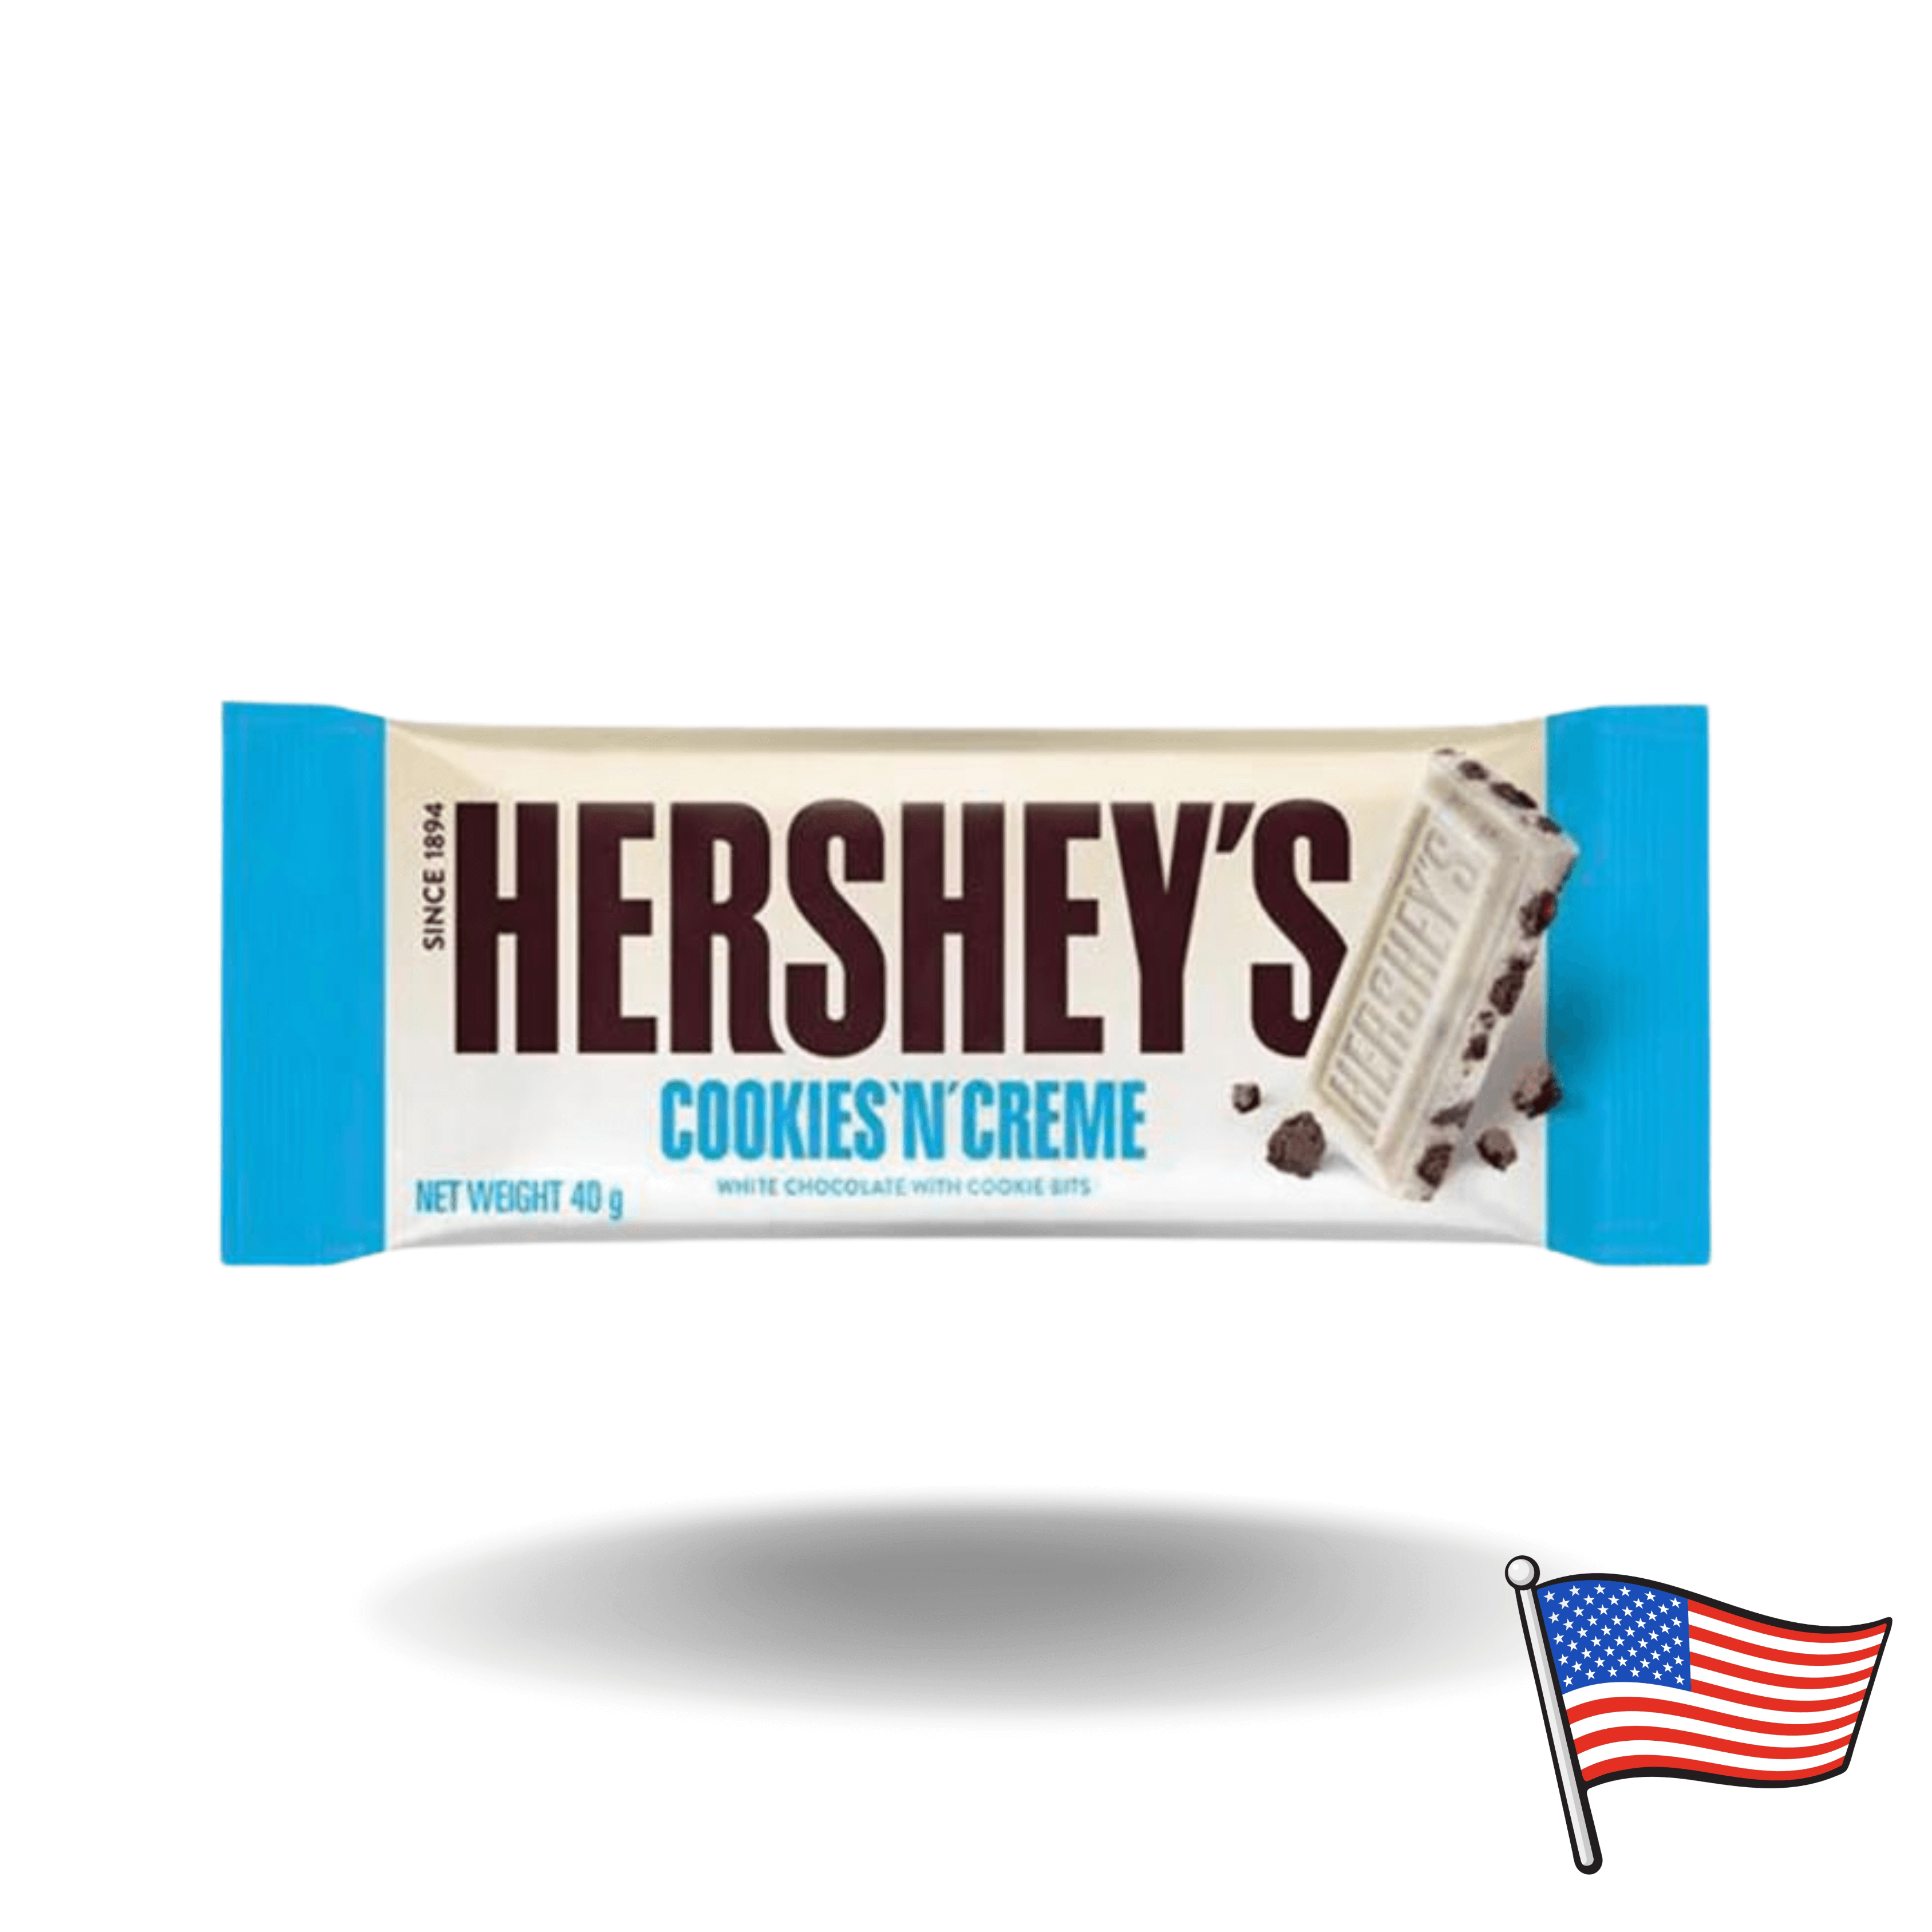 Wenn du Liebhaber von weißer Schokolade und Keksen bist, dann ist die Hershey's Cookies 'n' Creme die ideale Wahl für dich